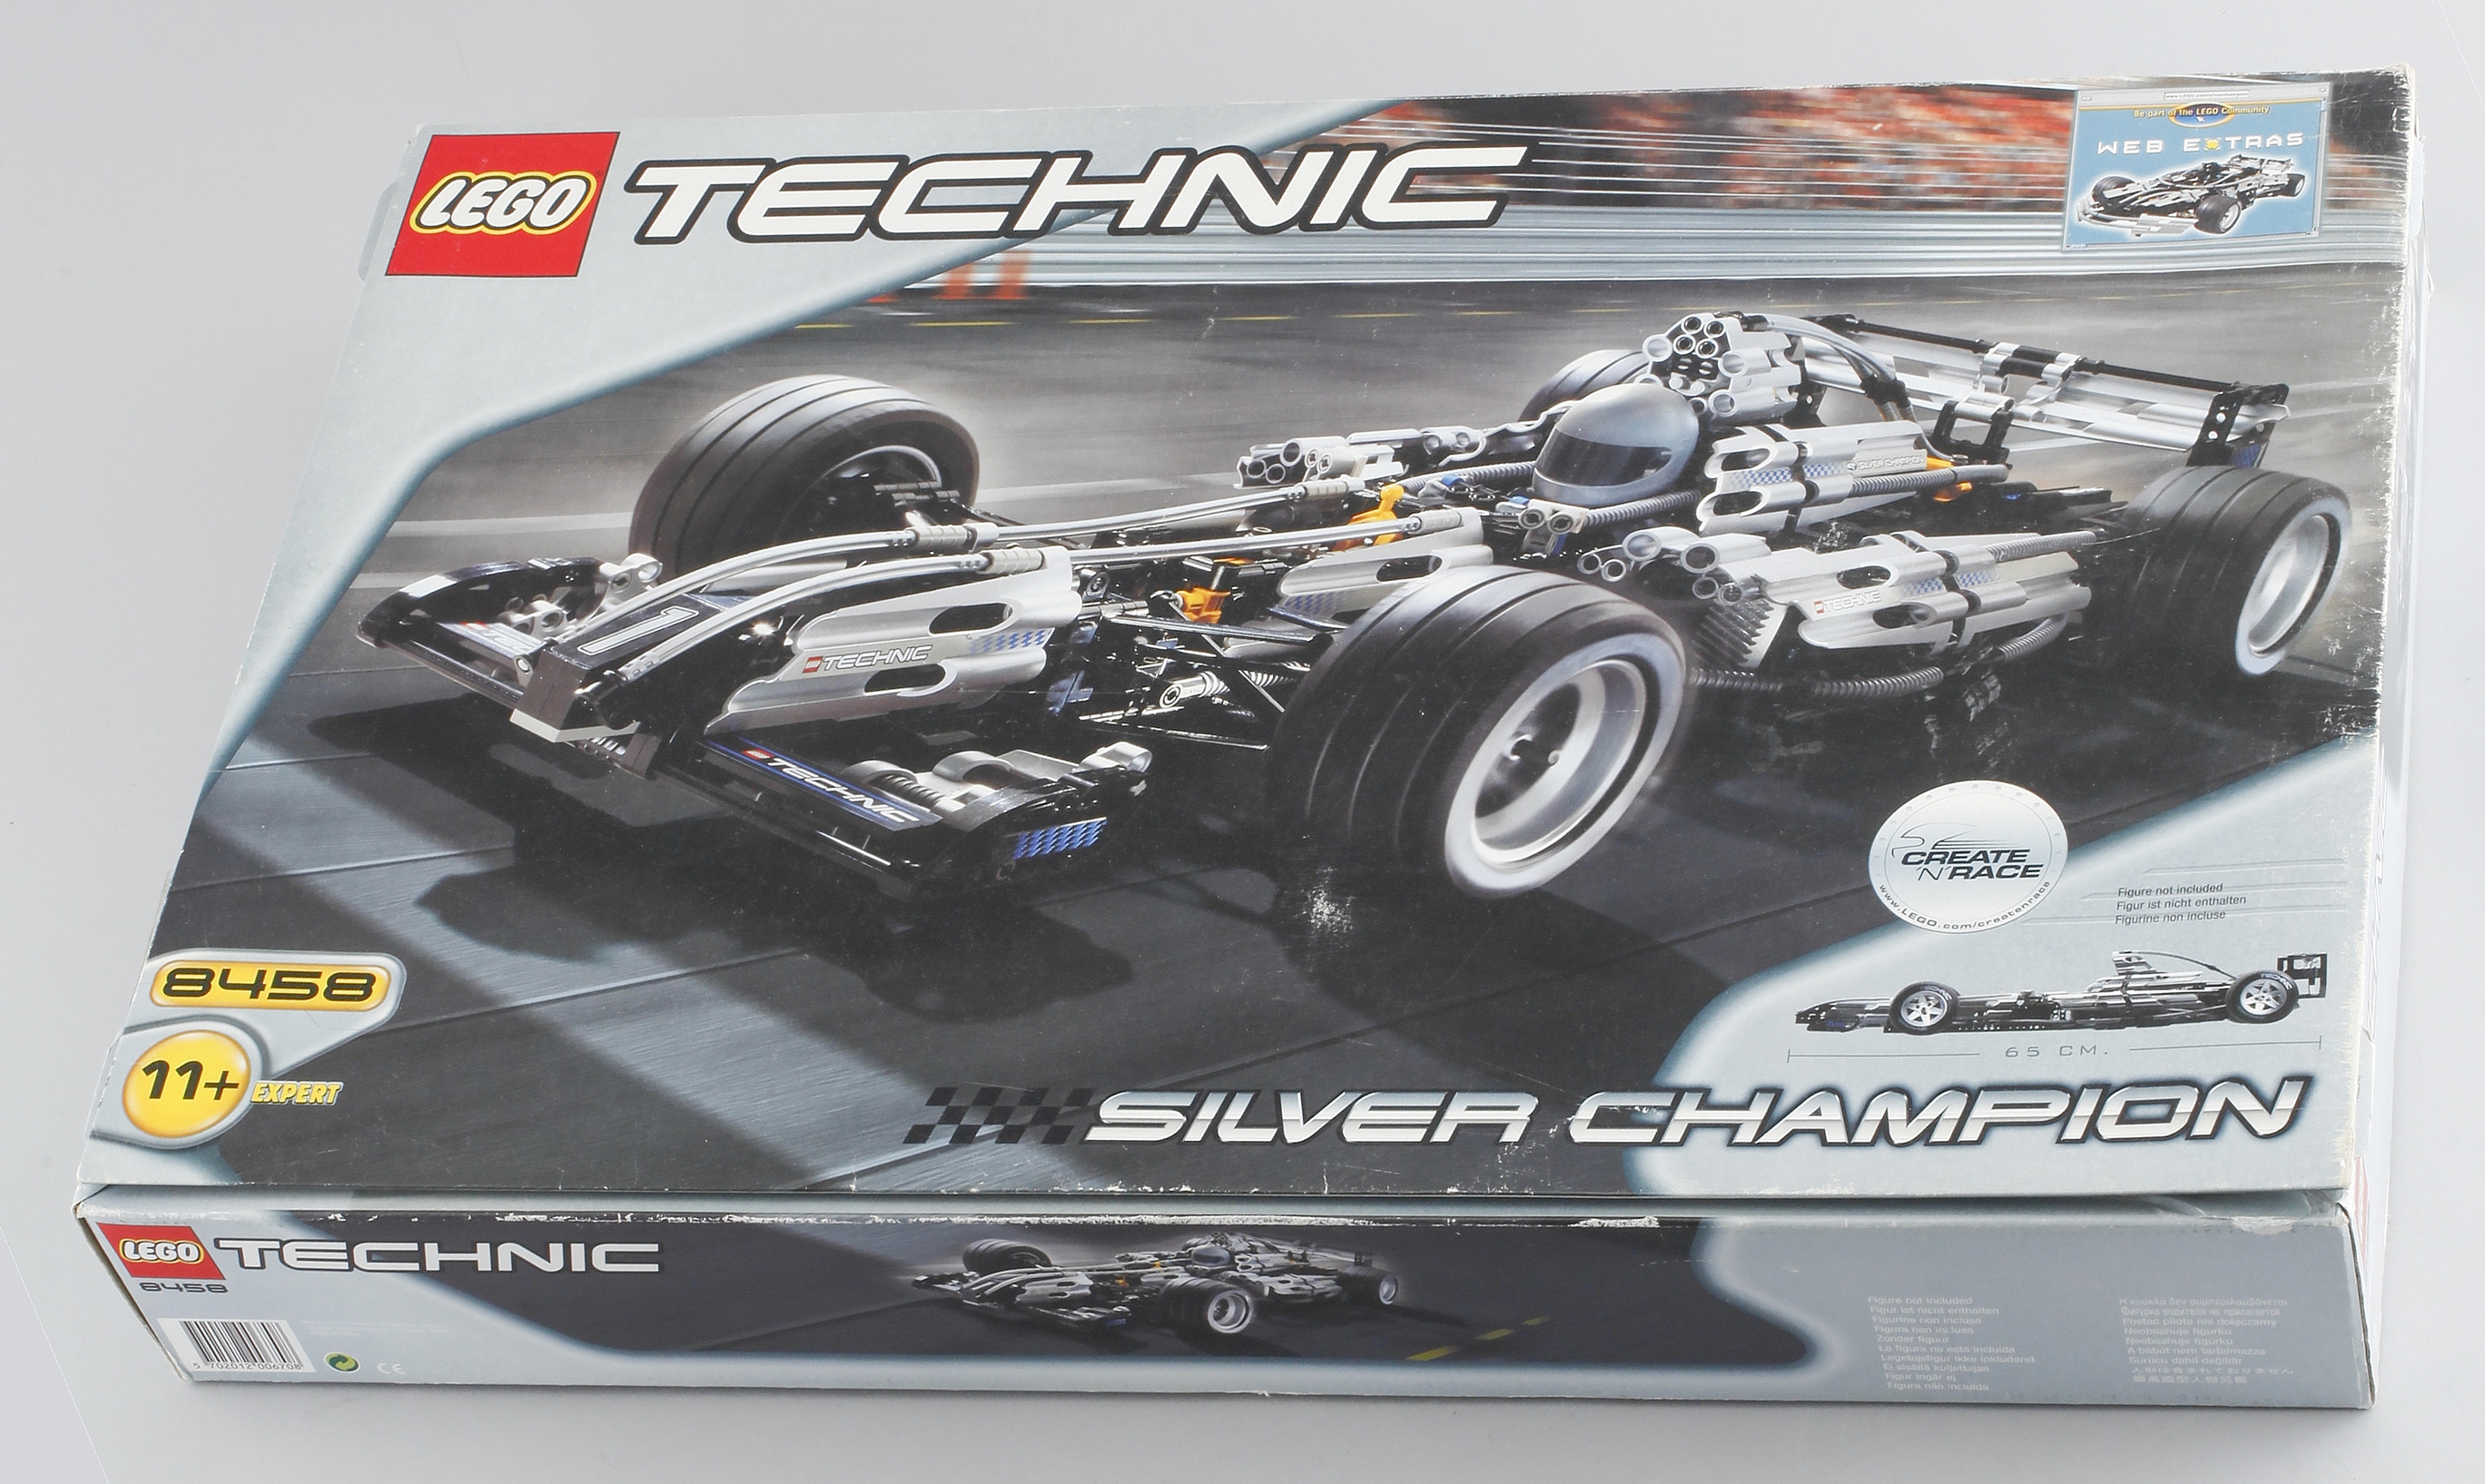 8458 - Silver Champion